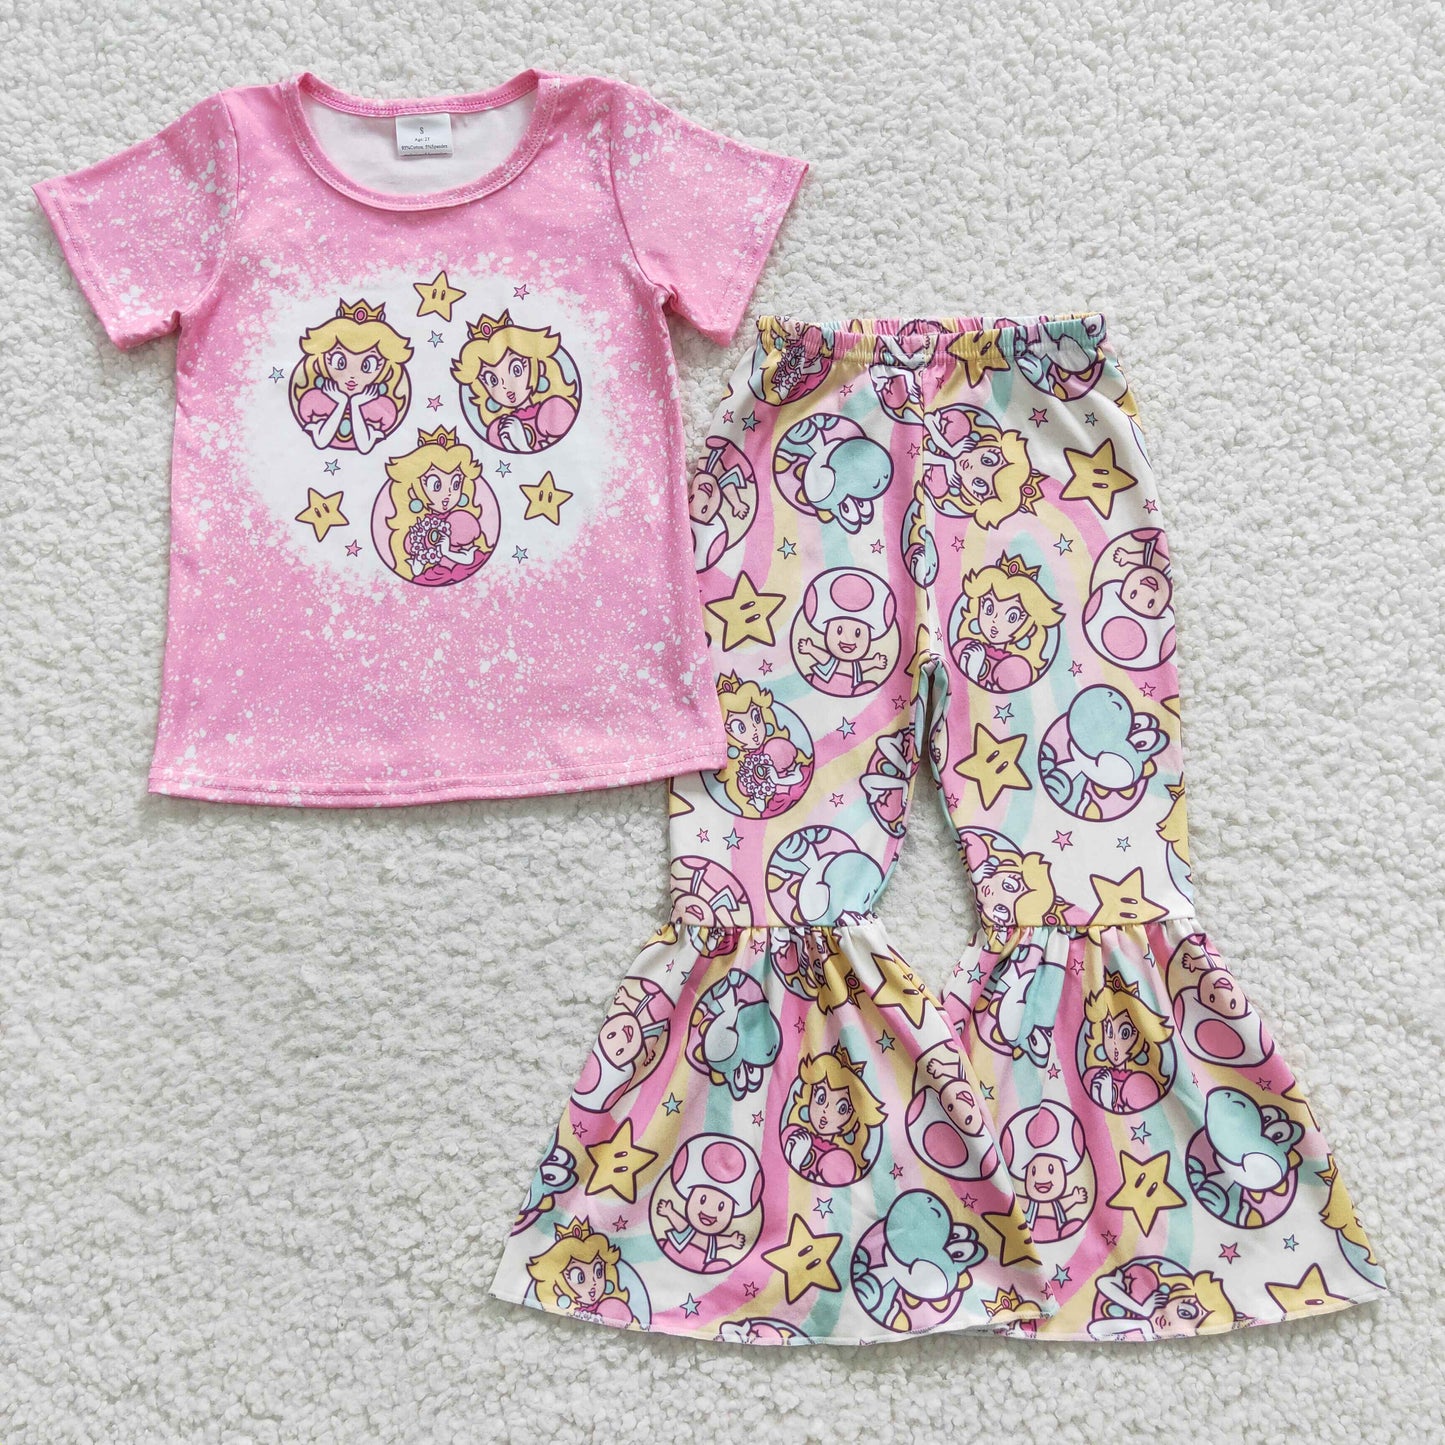 GSPO0651 Pink cartoon princess print bell pants girls clothing sets